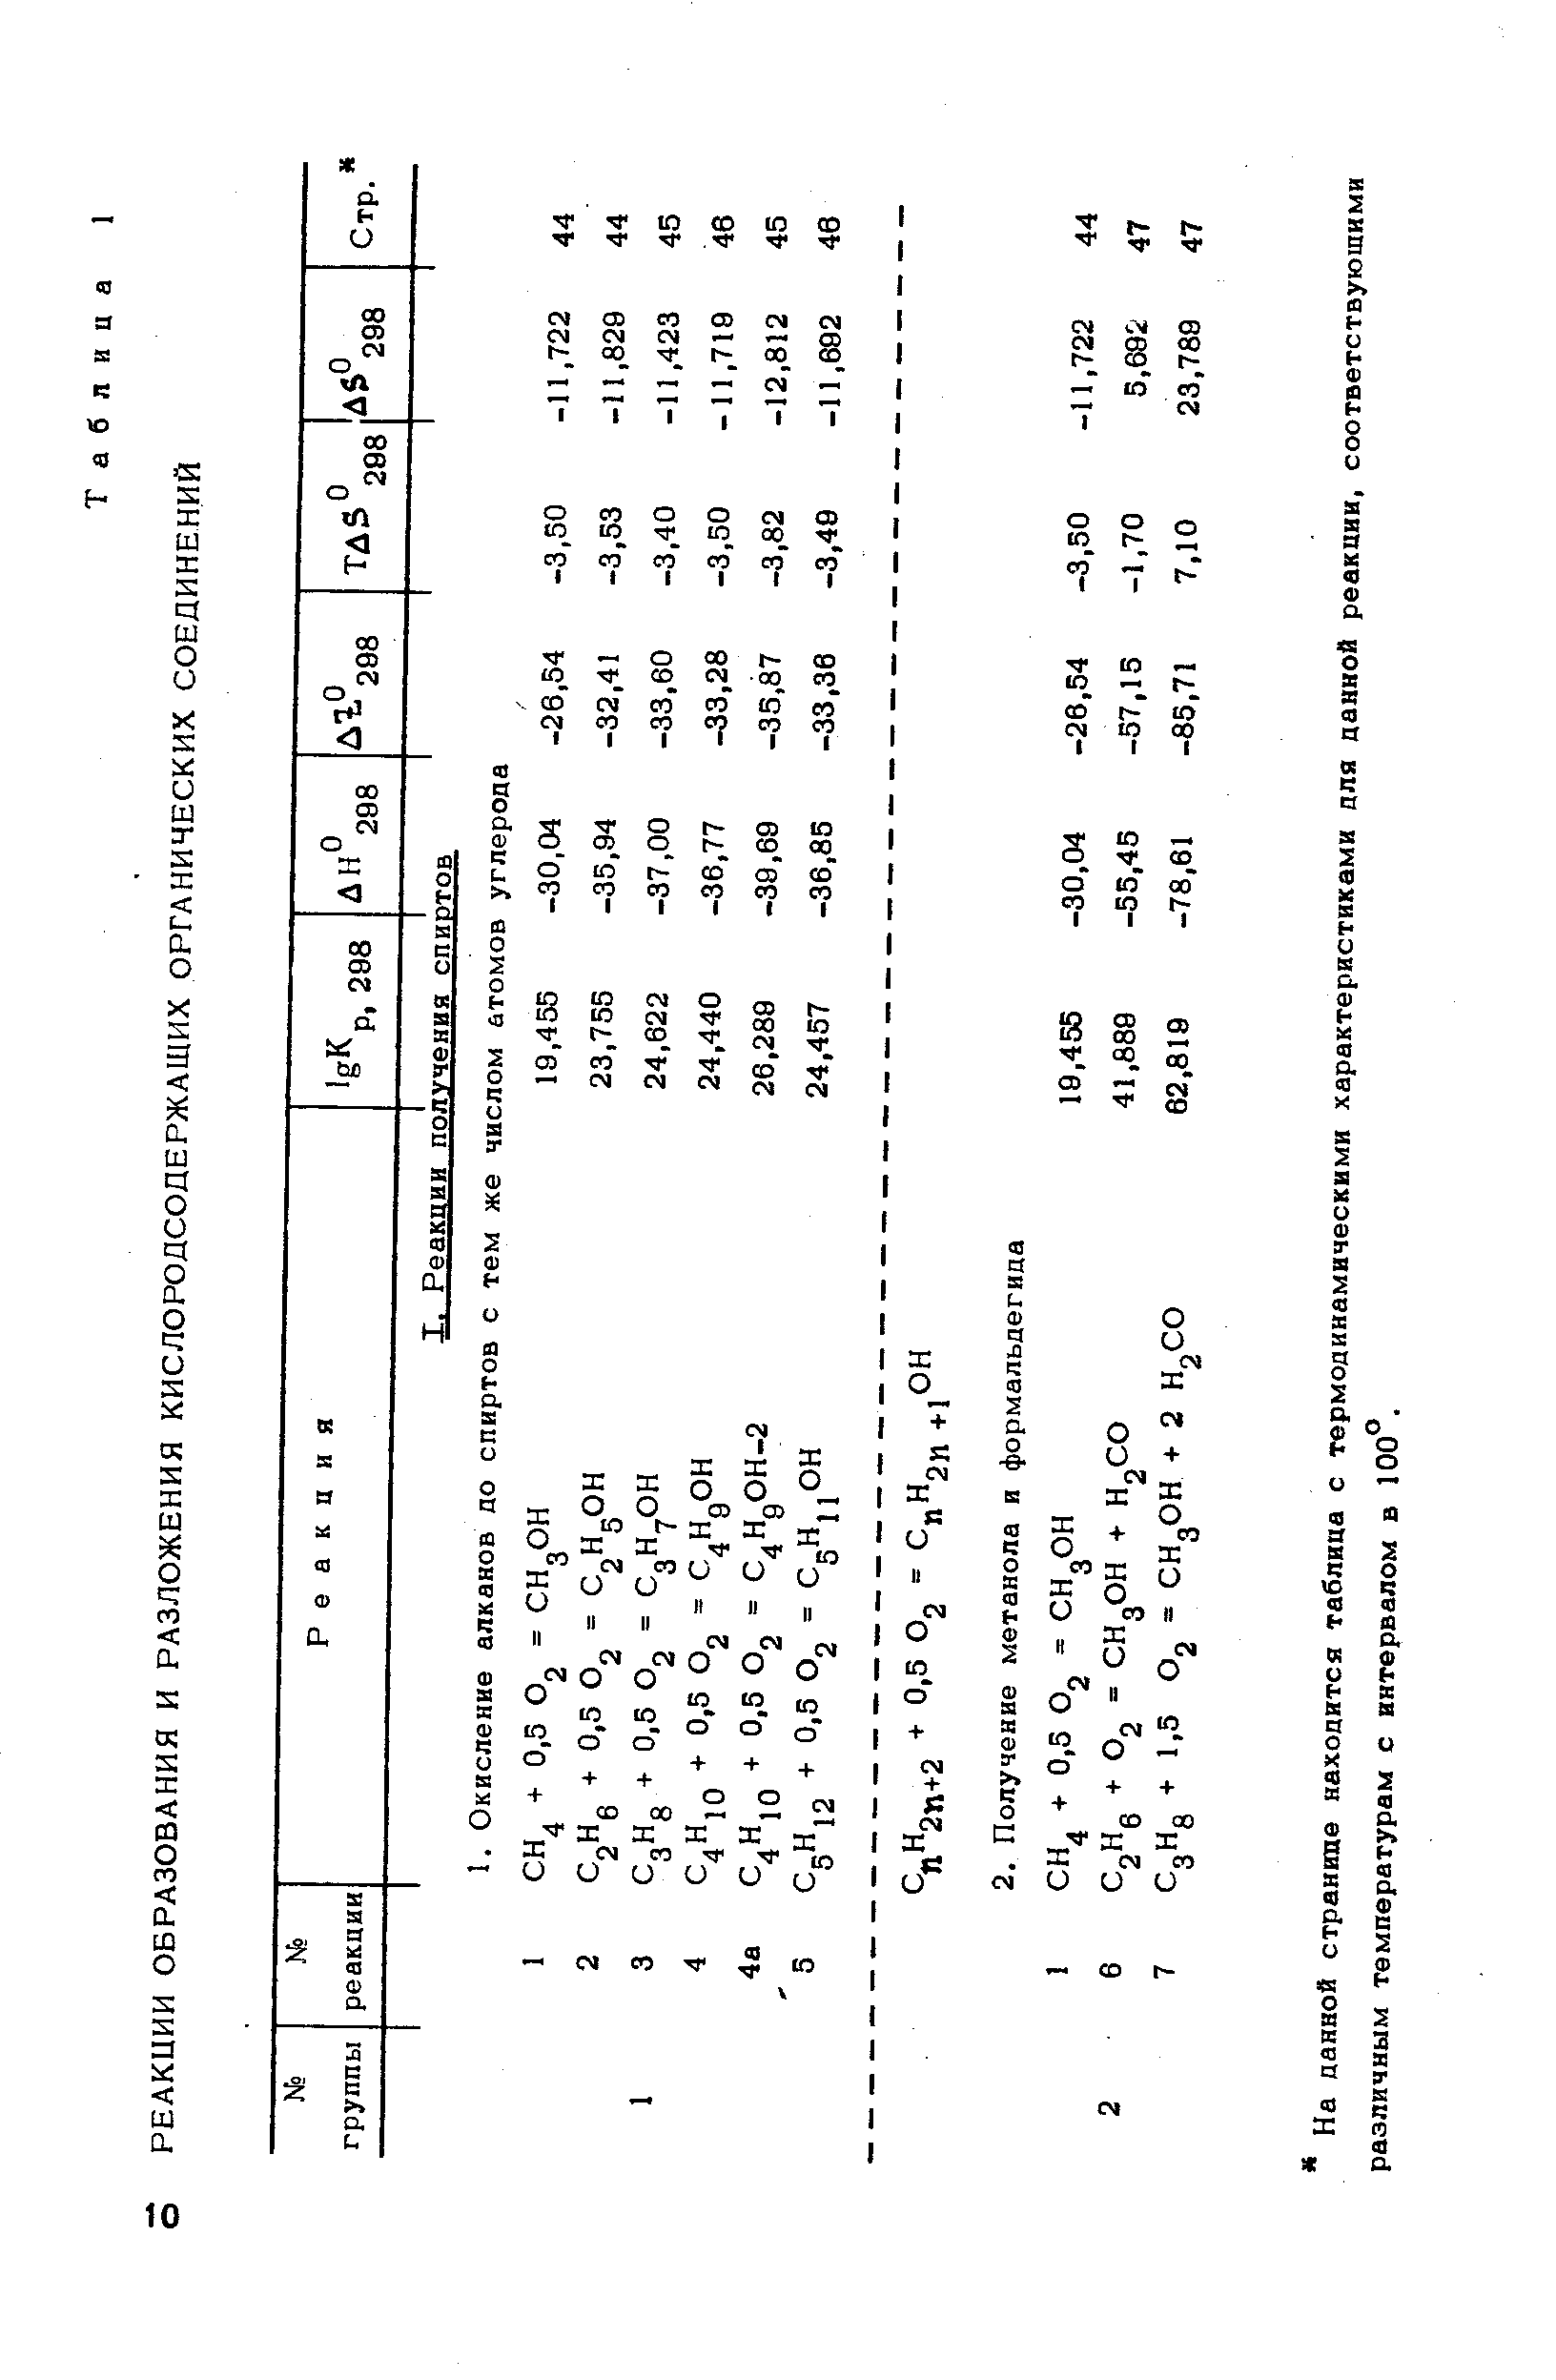 На данной странипе находится таблица с термодинамическими характеристиками для данной реакции, соответствующими различным температурам с интервалом в 100°.